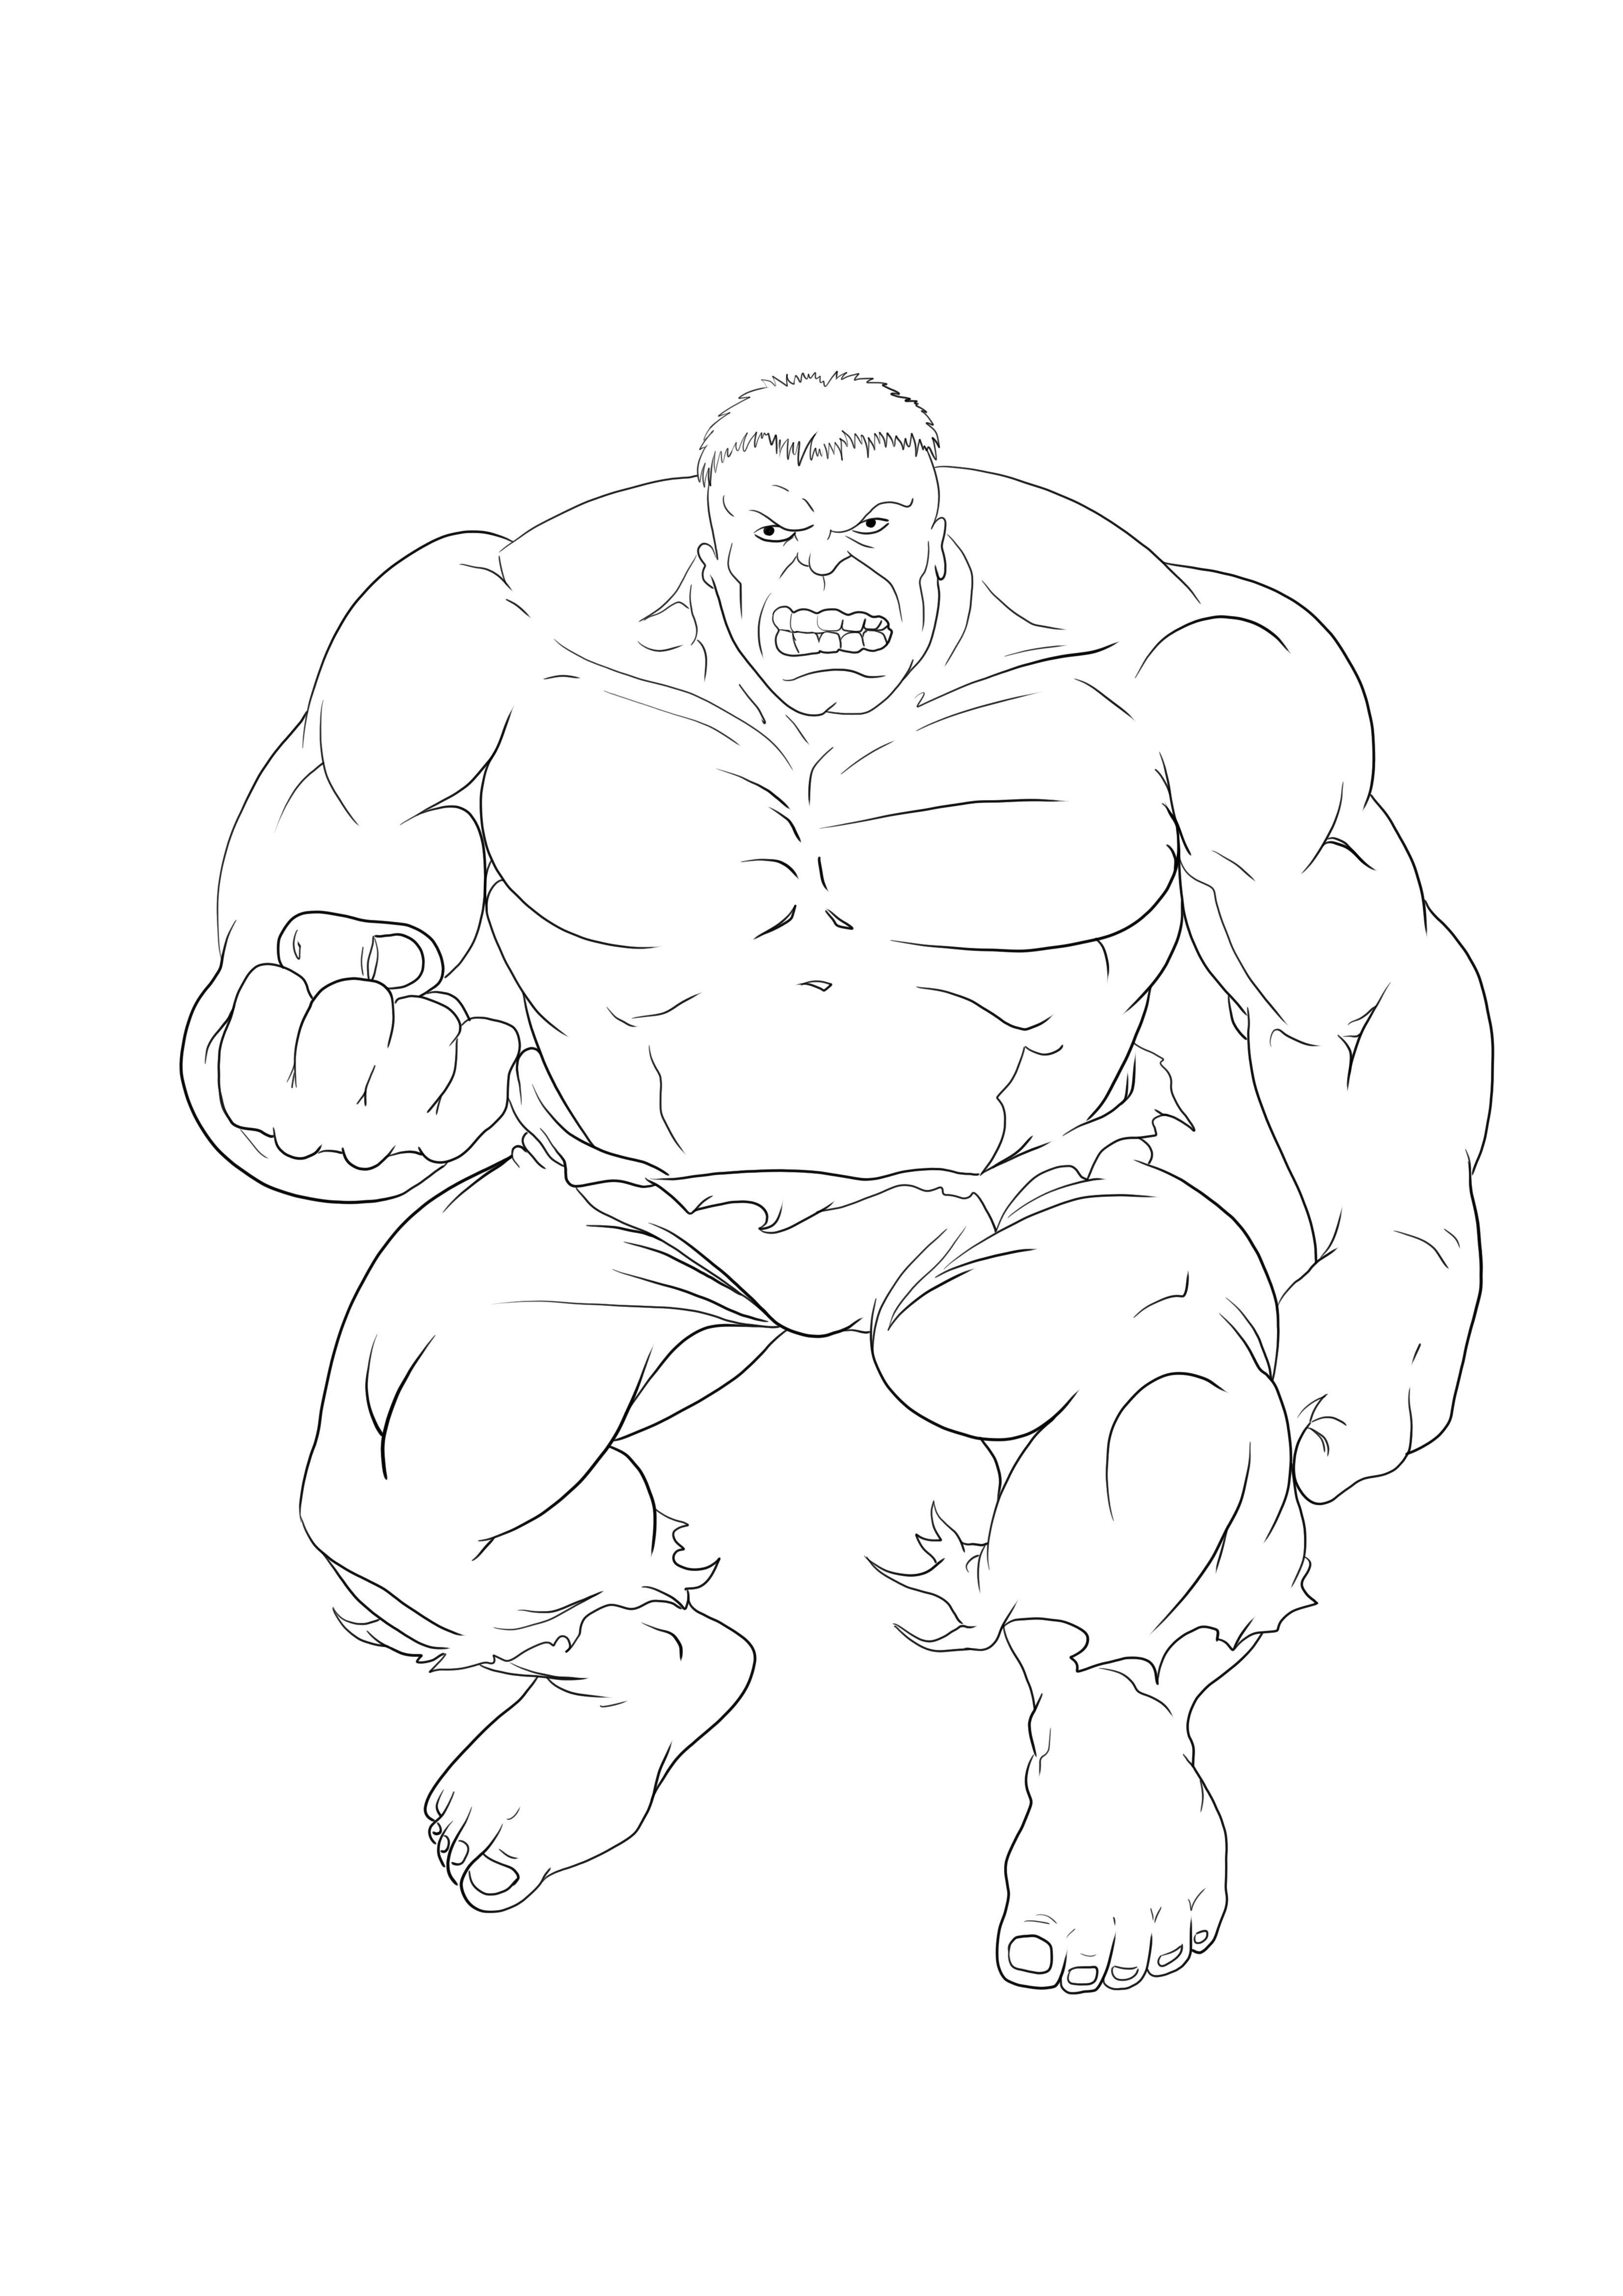 Angry Hulk om afbeelding te downloaden en te kleuren kleurplaat